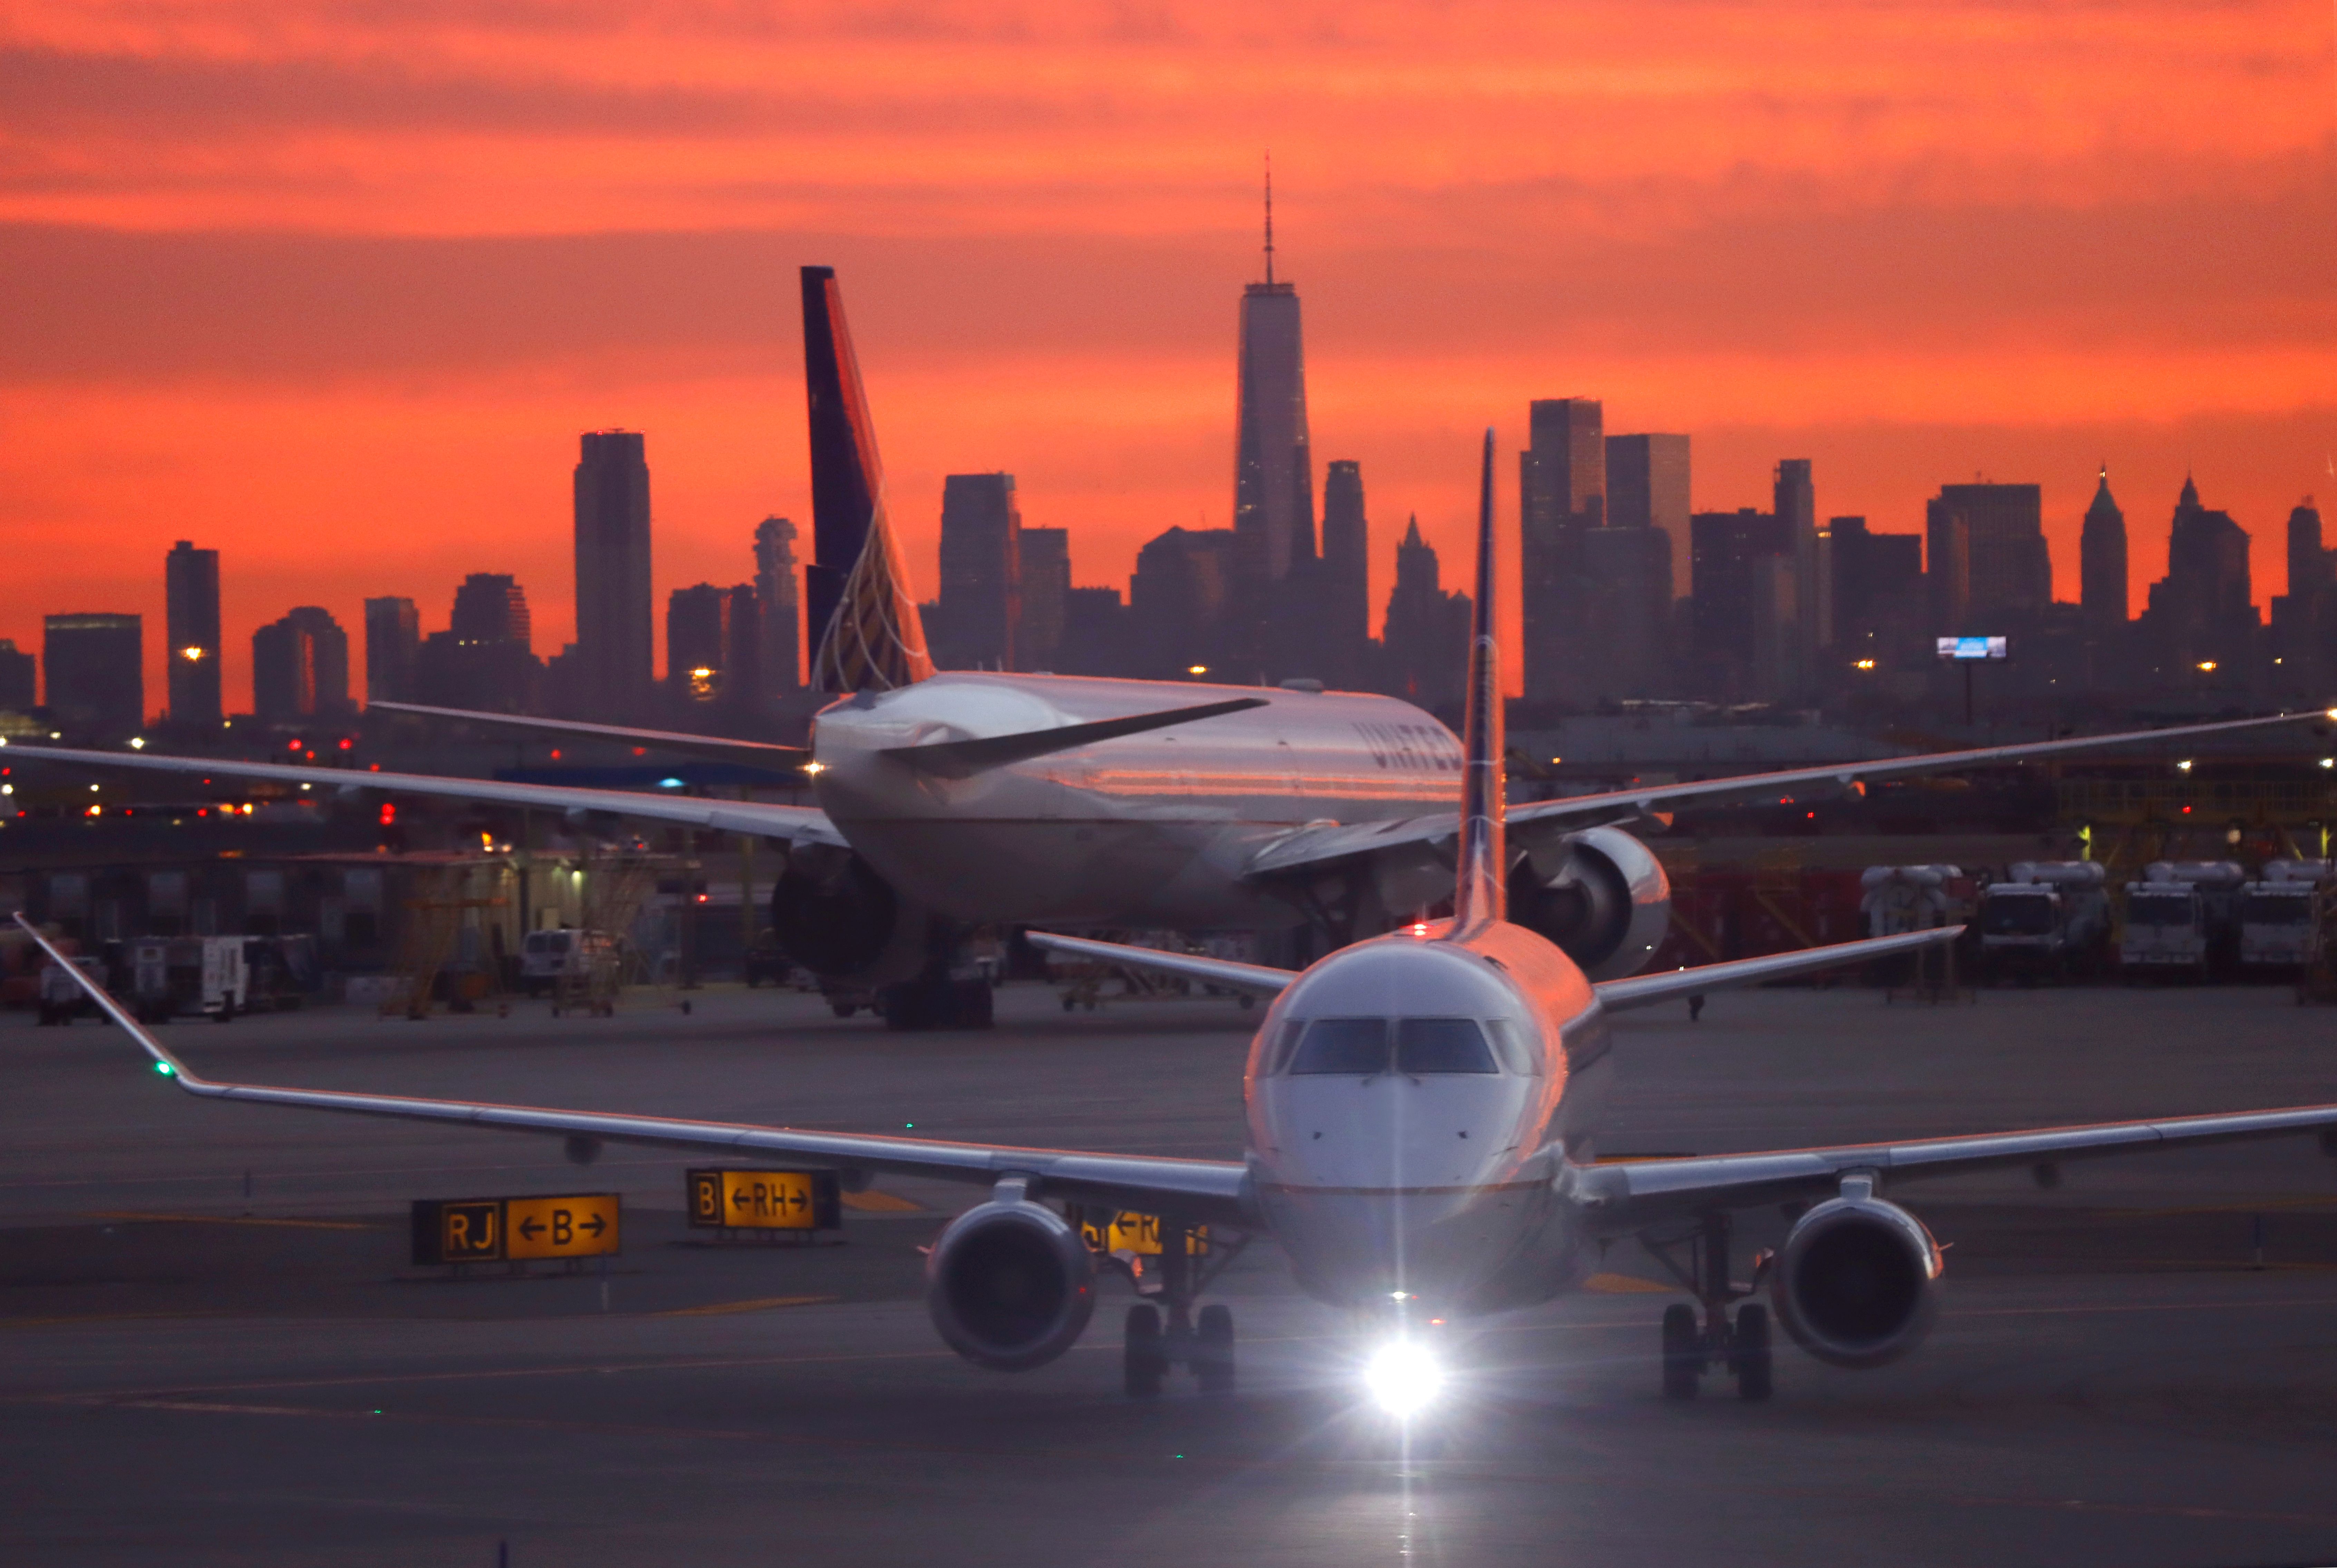 Planes at Newark Airport at sunset